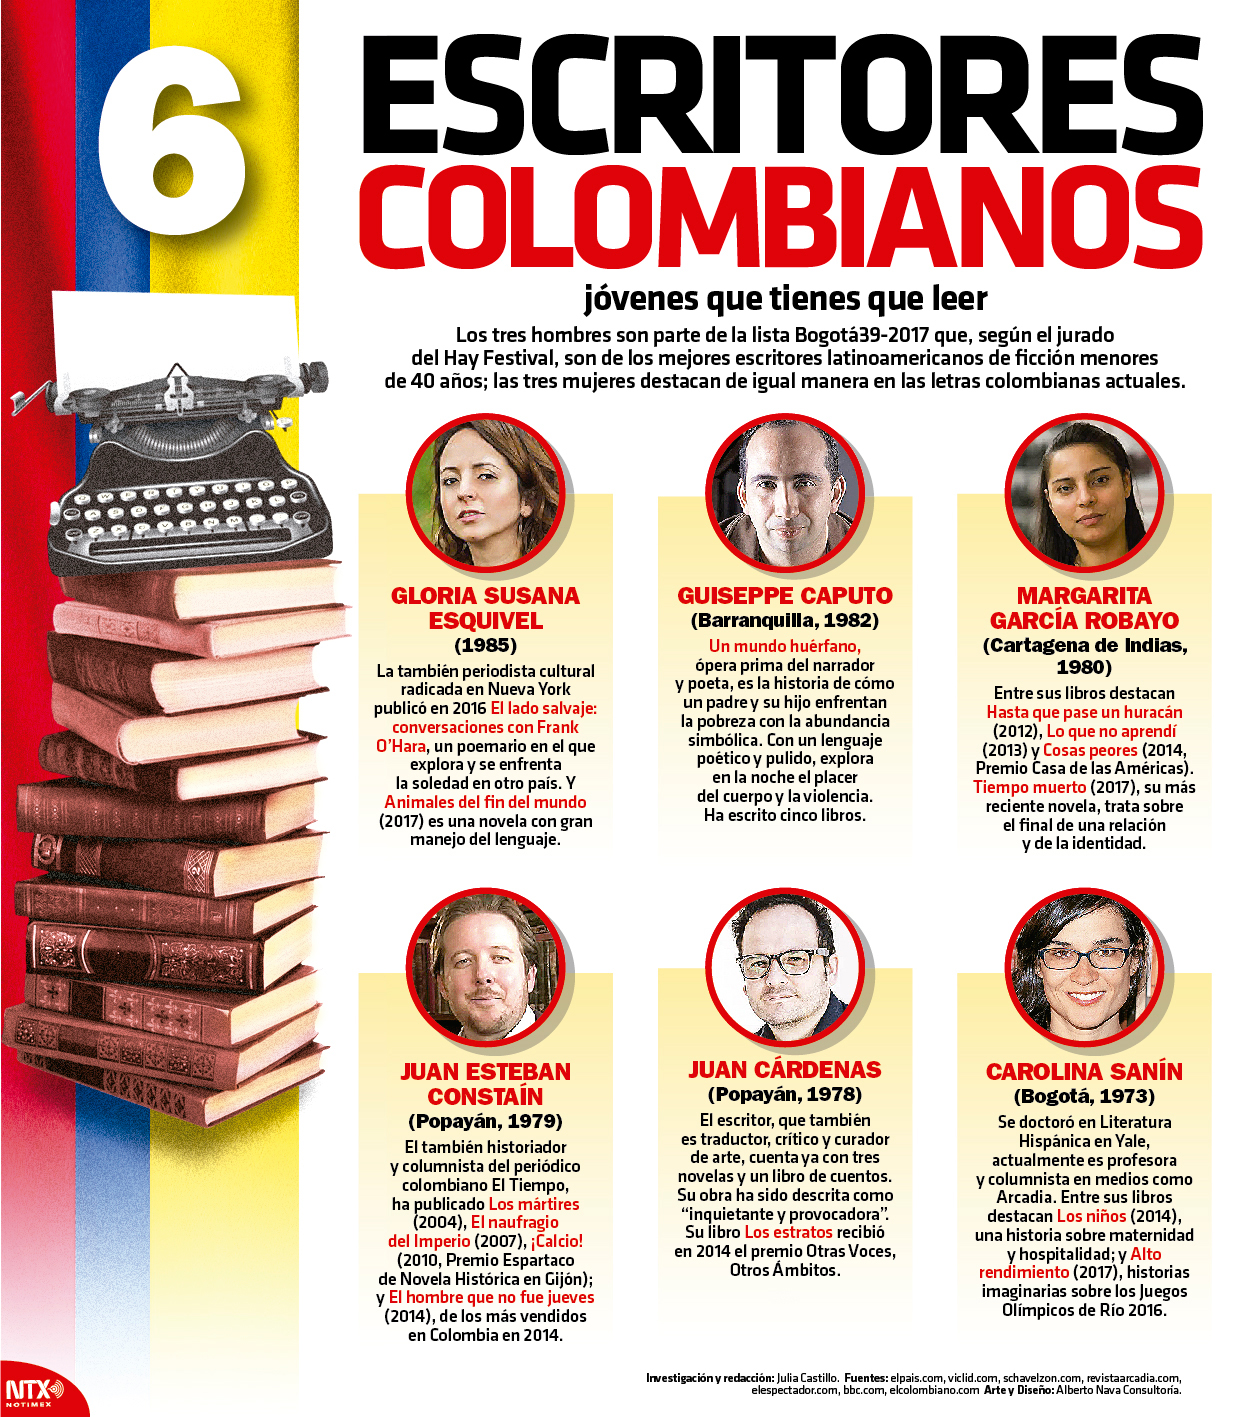 6 escritores colombianos jvenes que tienes que leer 